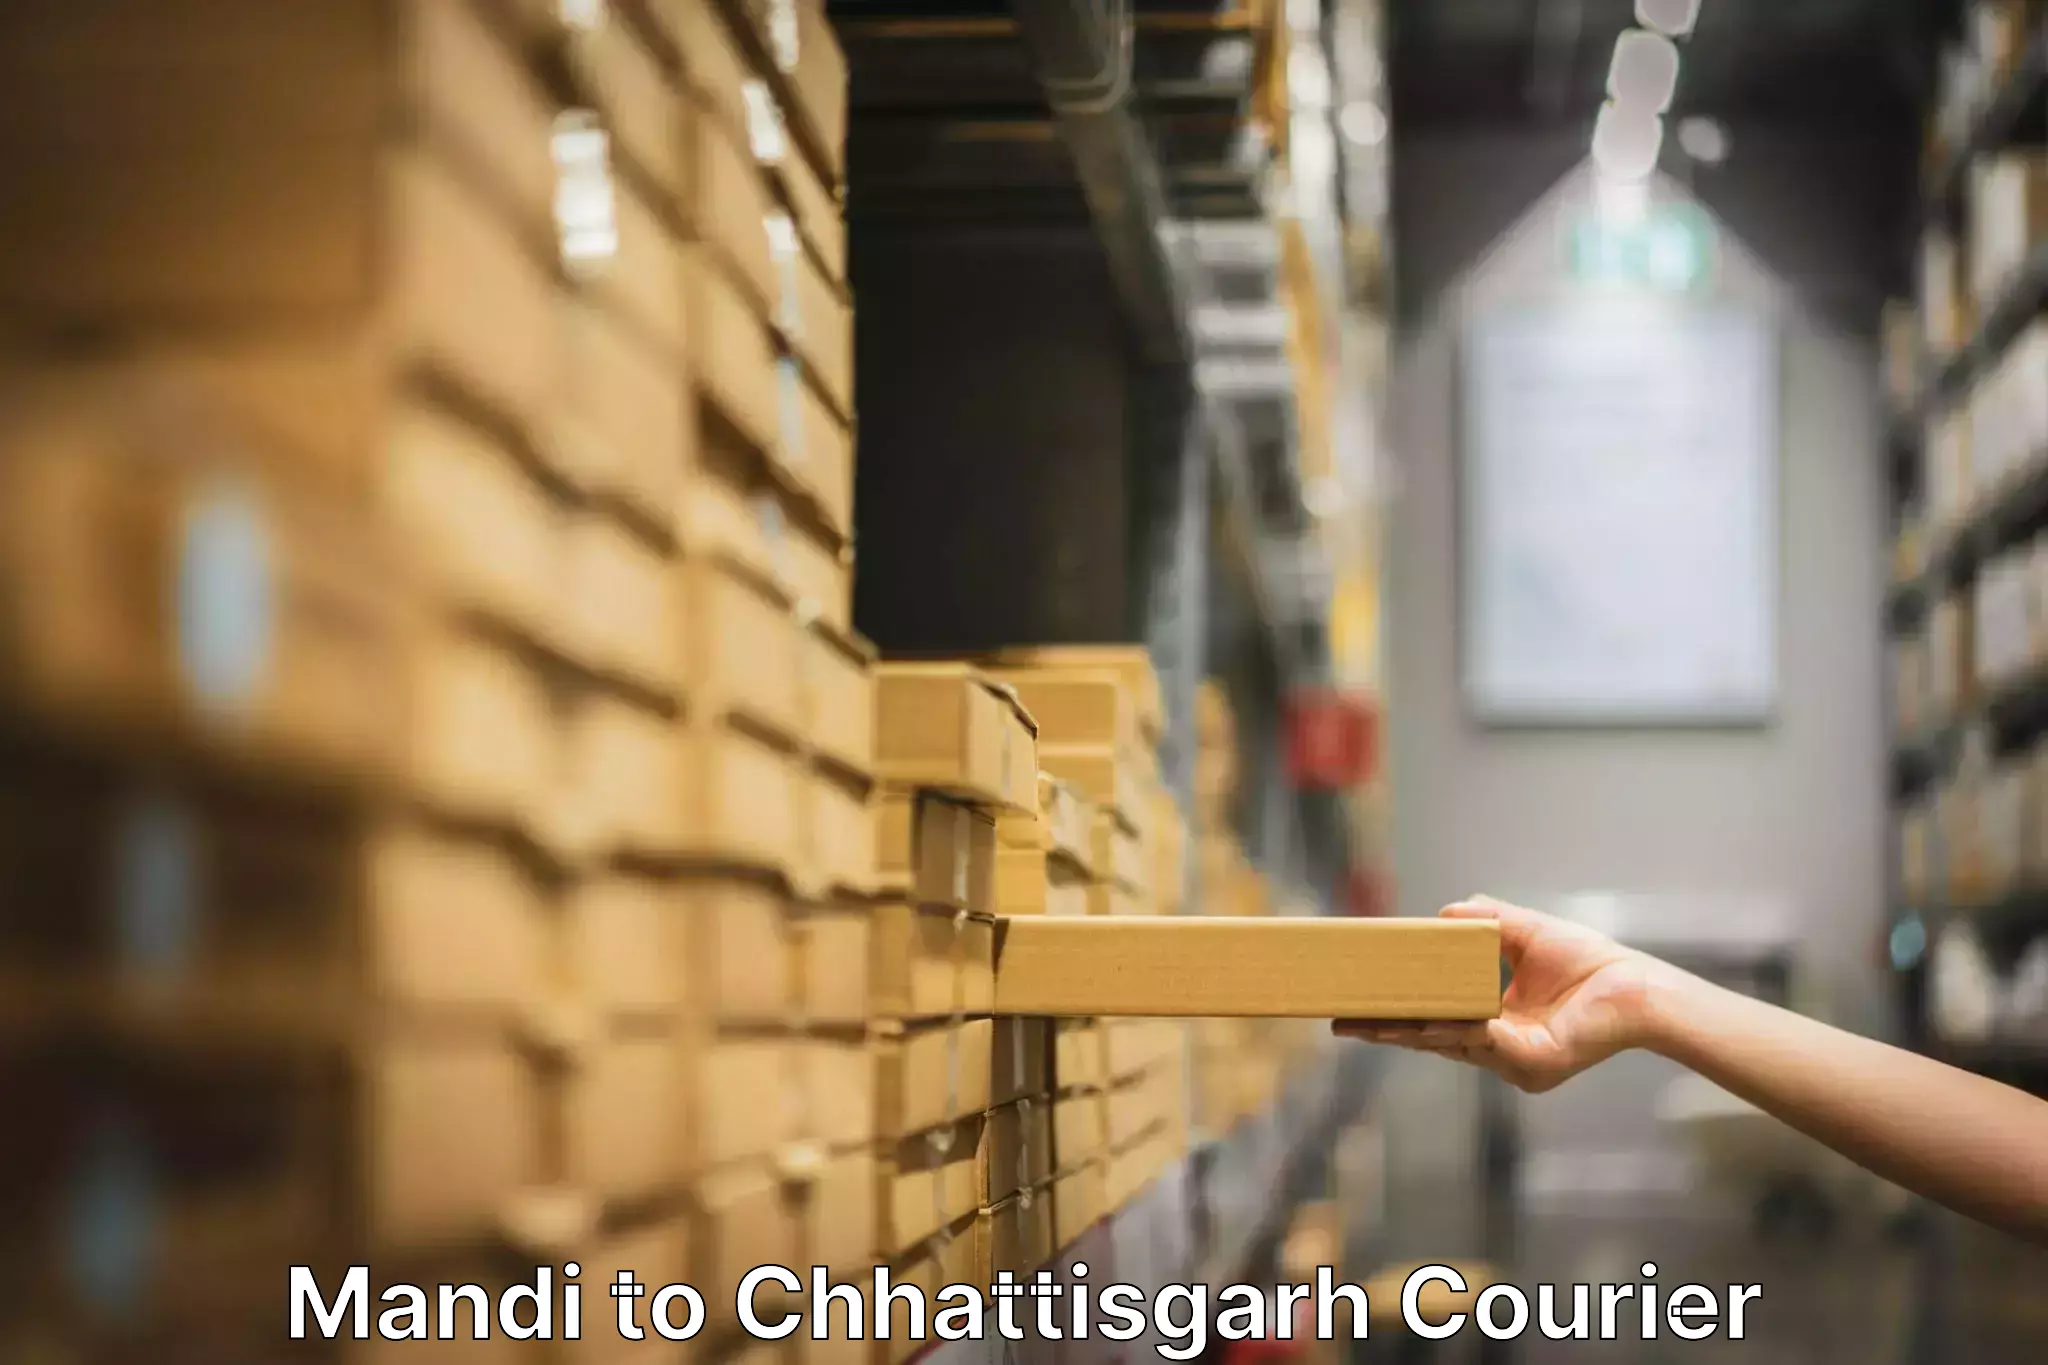 Expert moving and storage Mandi to Patna Chhattisgarh